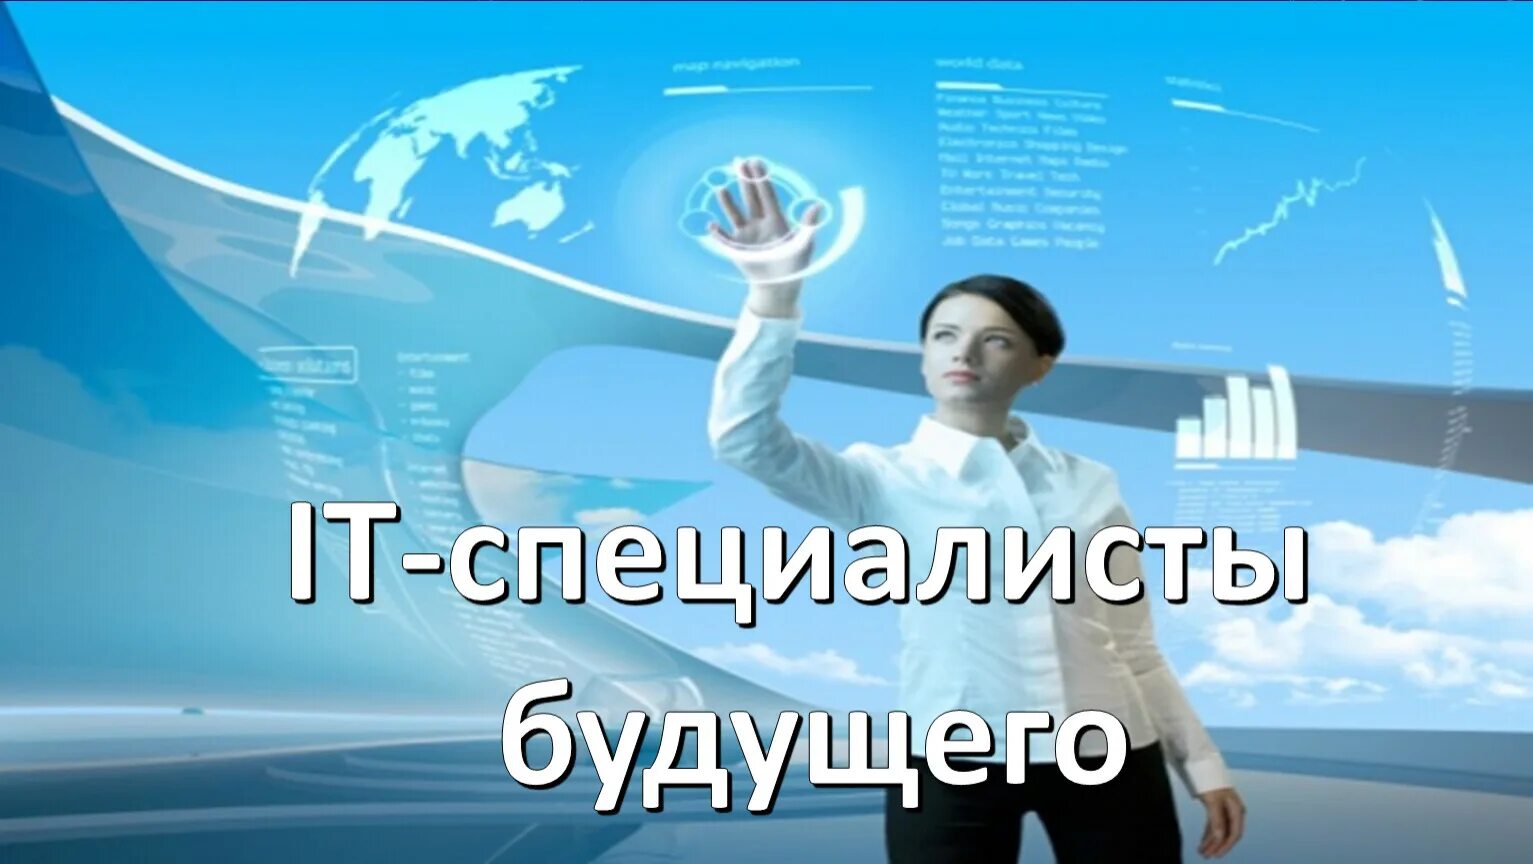 Будущий специалист. Реклама онлайн образования. Управляй качеством плакат. Travel Entertainment Technologies.